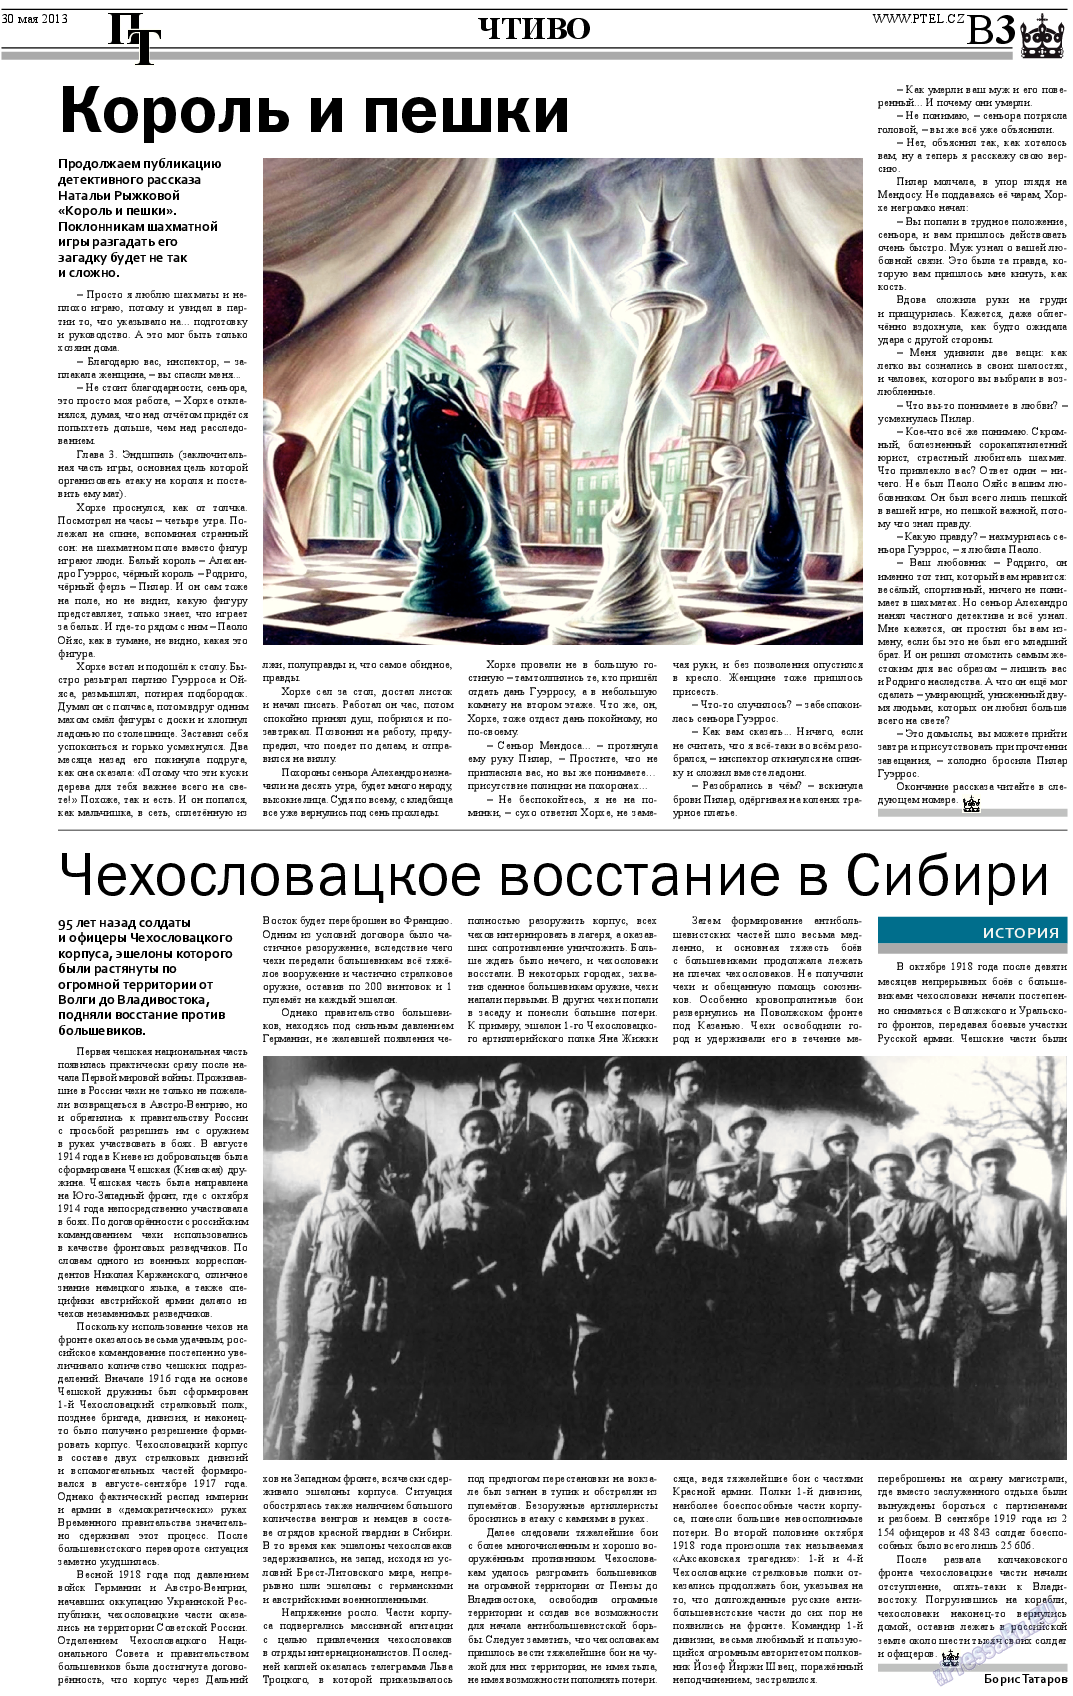 Пражский телеграф (газета). 2013 год, номер 21, стр. 11